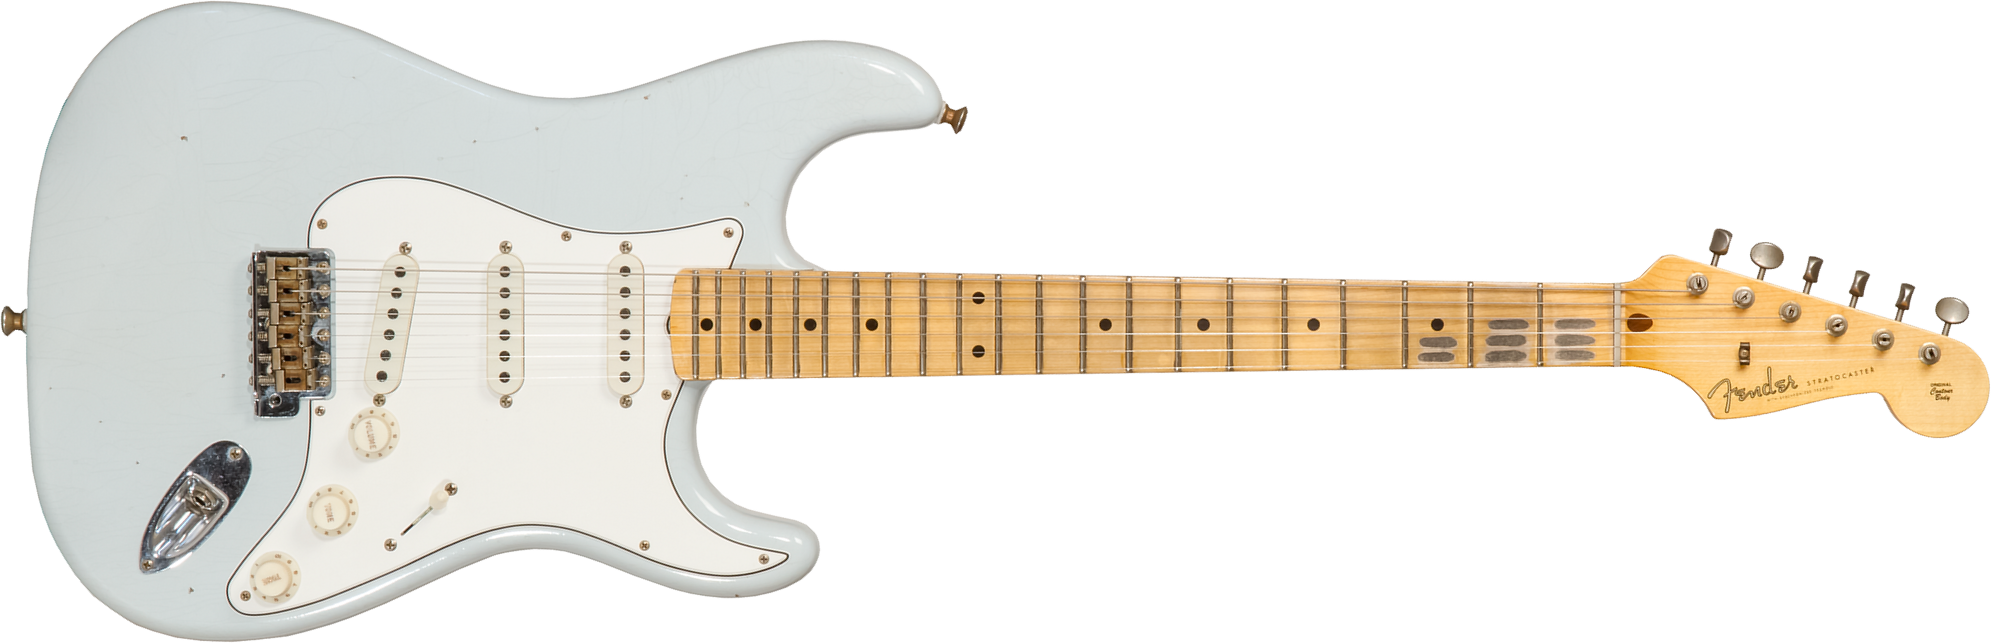 Fender Custom Shop Strat Tomatillo Special 3s Trem Mn #cz571194 - Journeyman Relic Aged Sonic Blue - Guitare Électrique Forme Str - Main picture